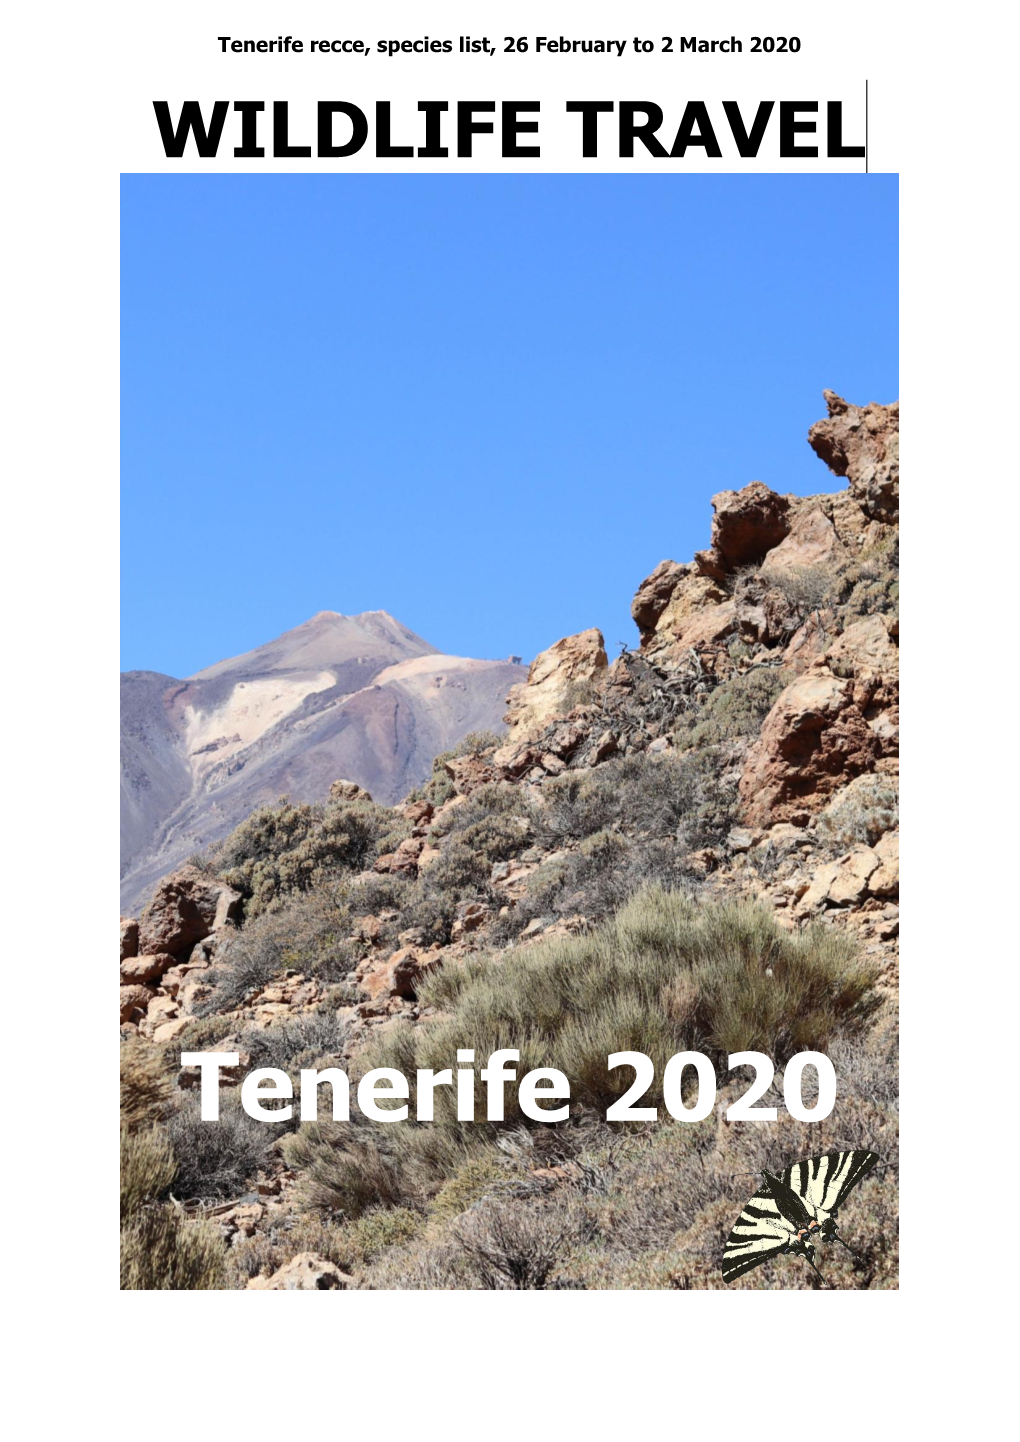 Wildlife Travel Tenerife 2020